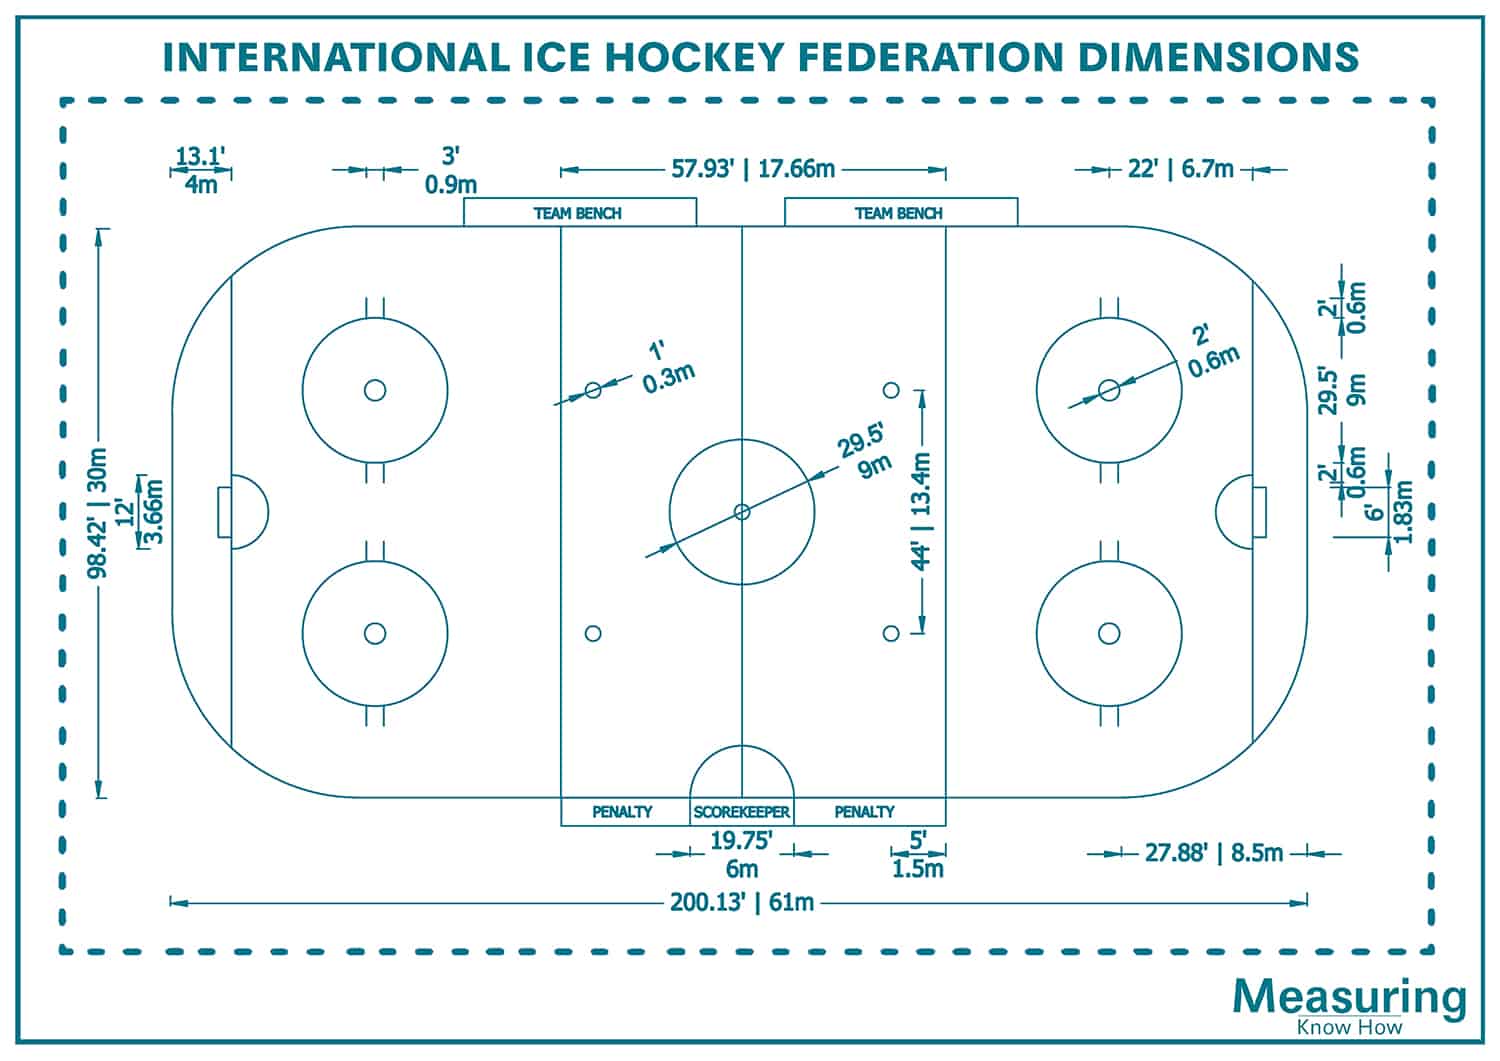 Dimensiones de la pista de la federación internacional de hockey sobre hielo